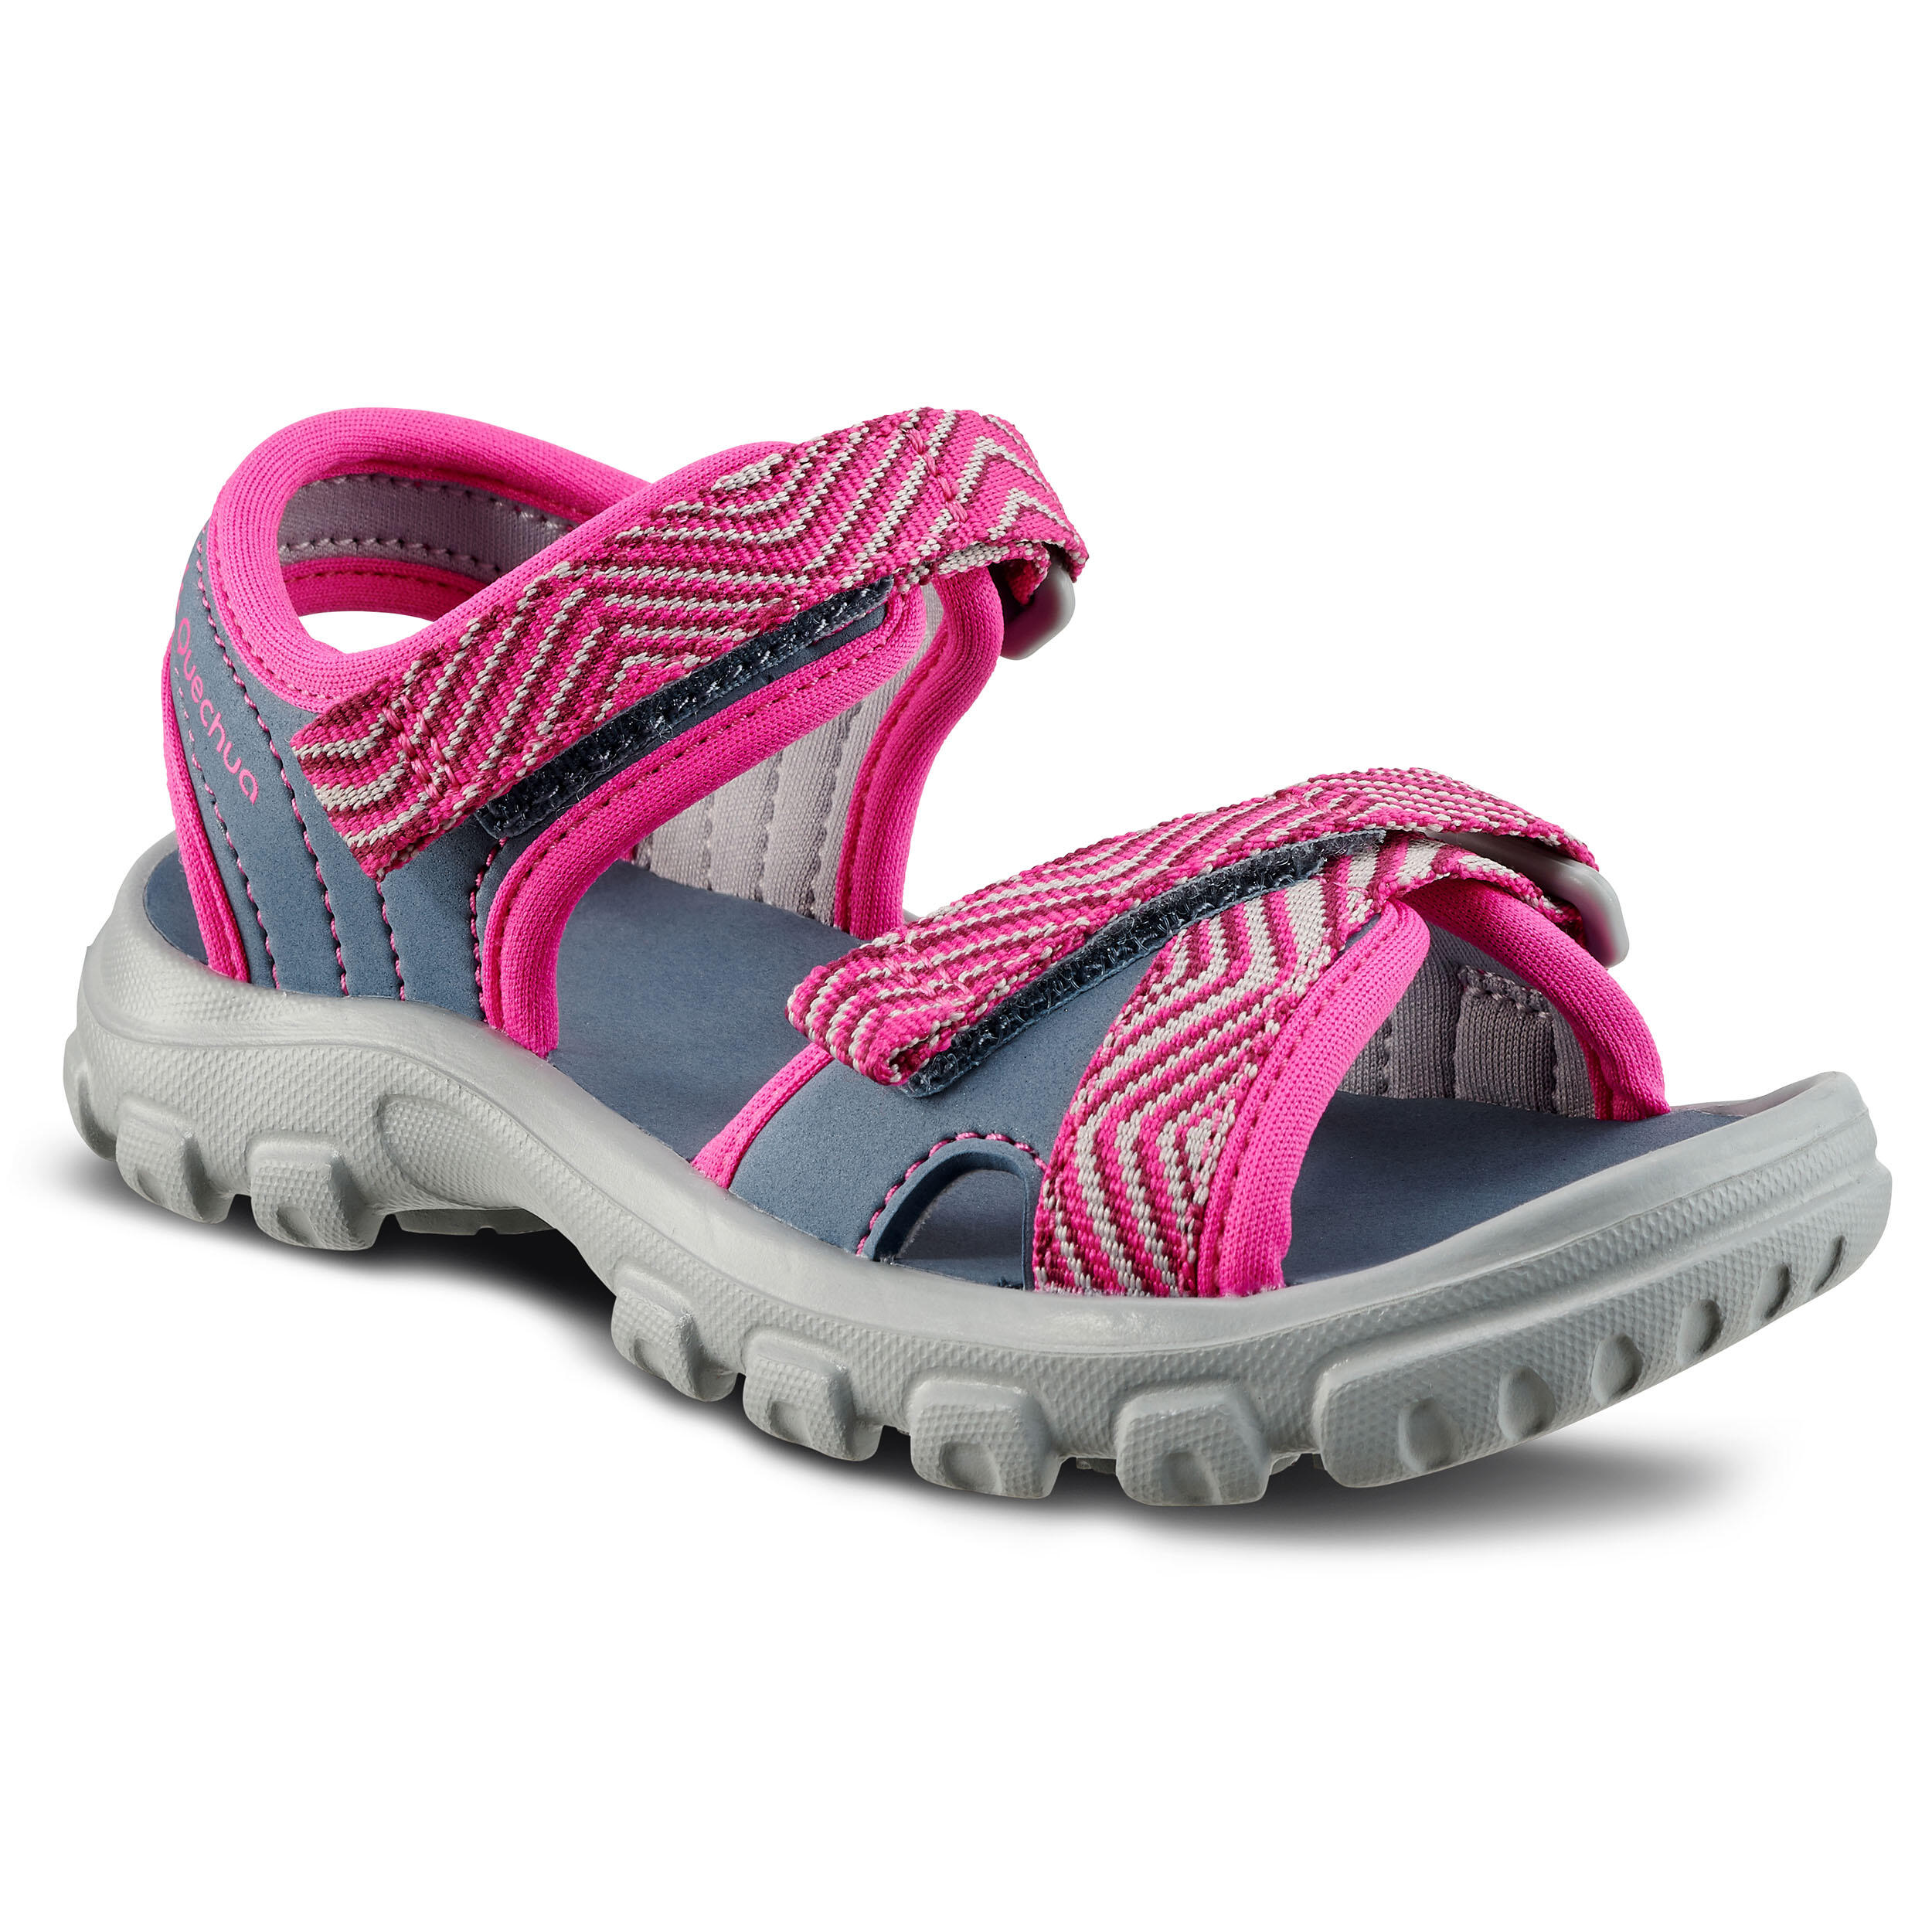 decathlon girls sandals